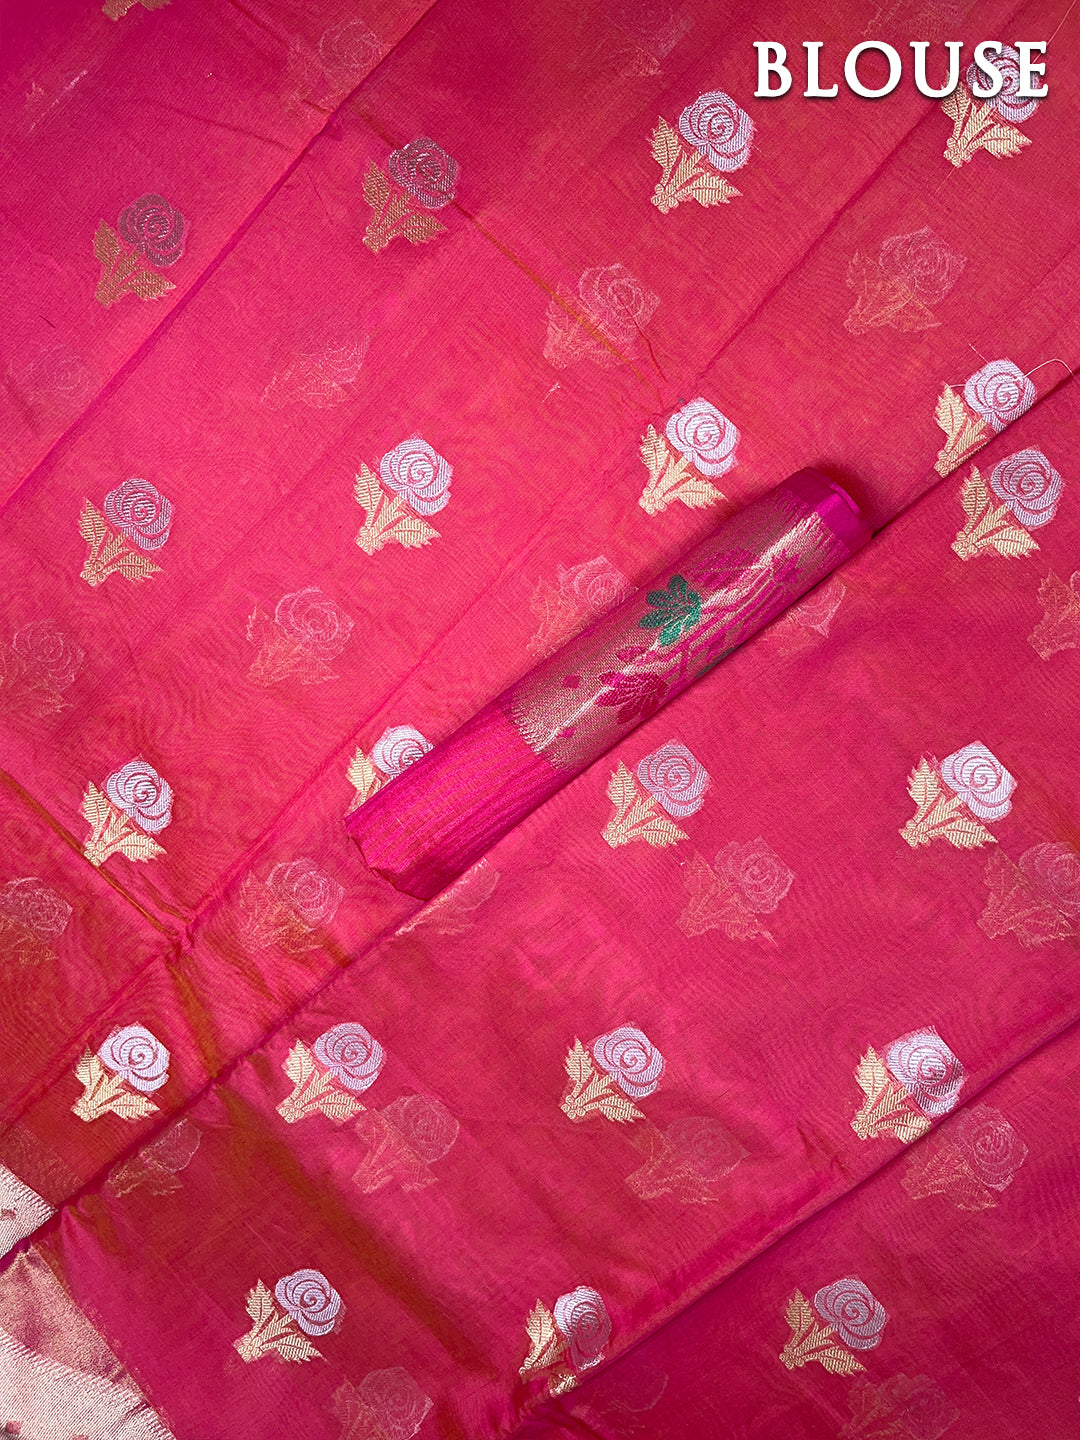 Pink banarasi chanderi cotton saree